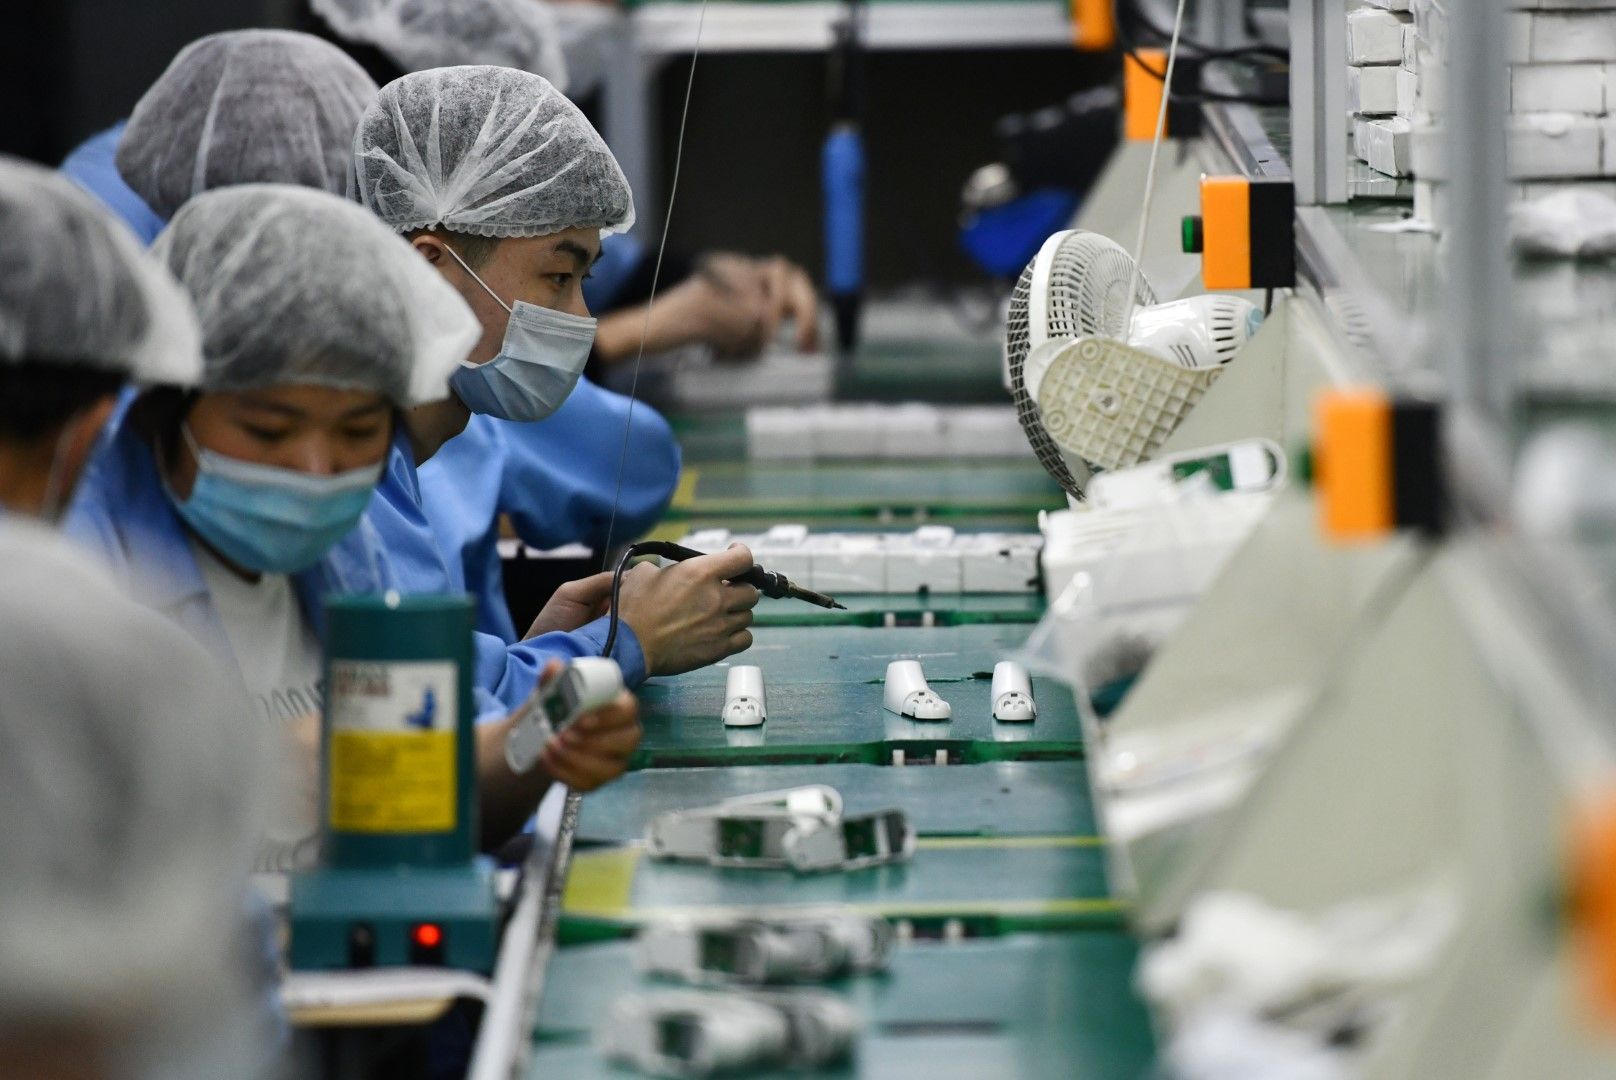 Работници произвеждат инфрачервени термометри в китайски завод. Китай ще продължи да изнася медицинско оборудване и защитни средства, като ще повиши изискванията за по-високо качество на изнасяното